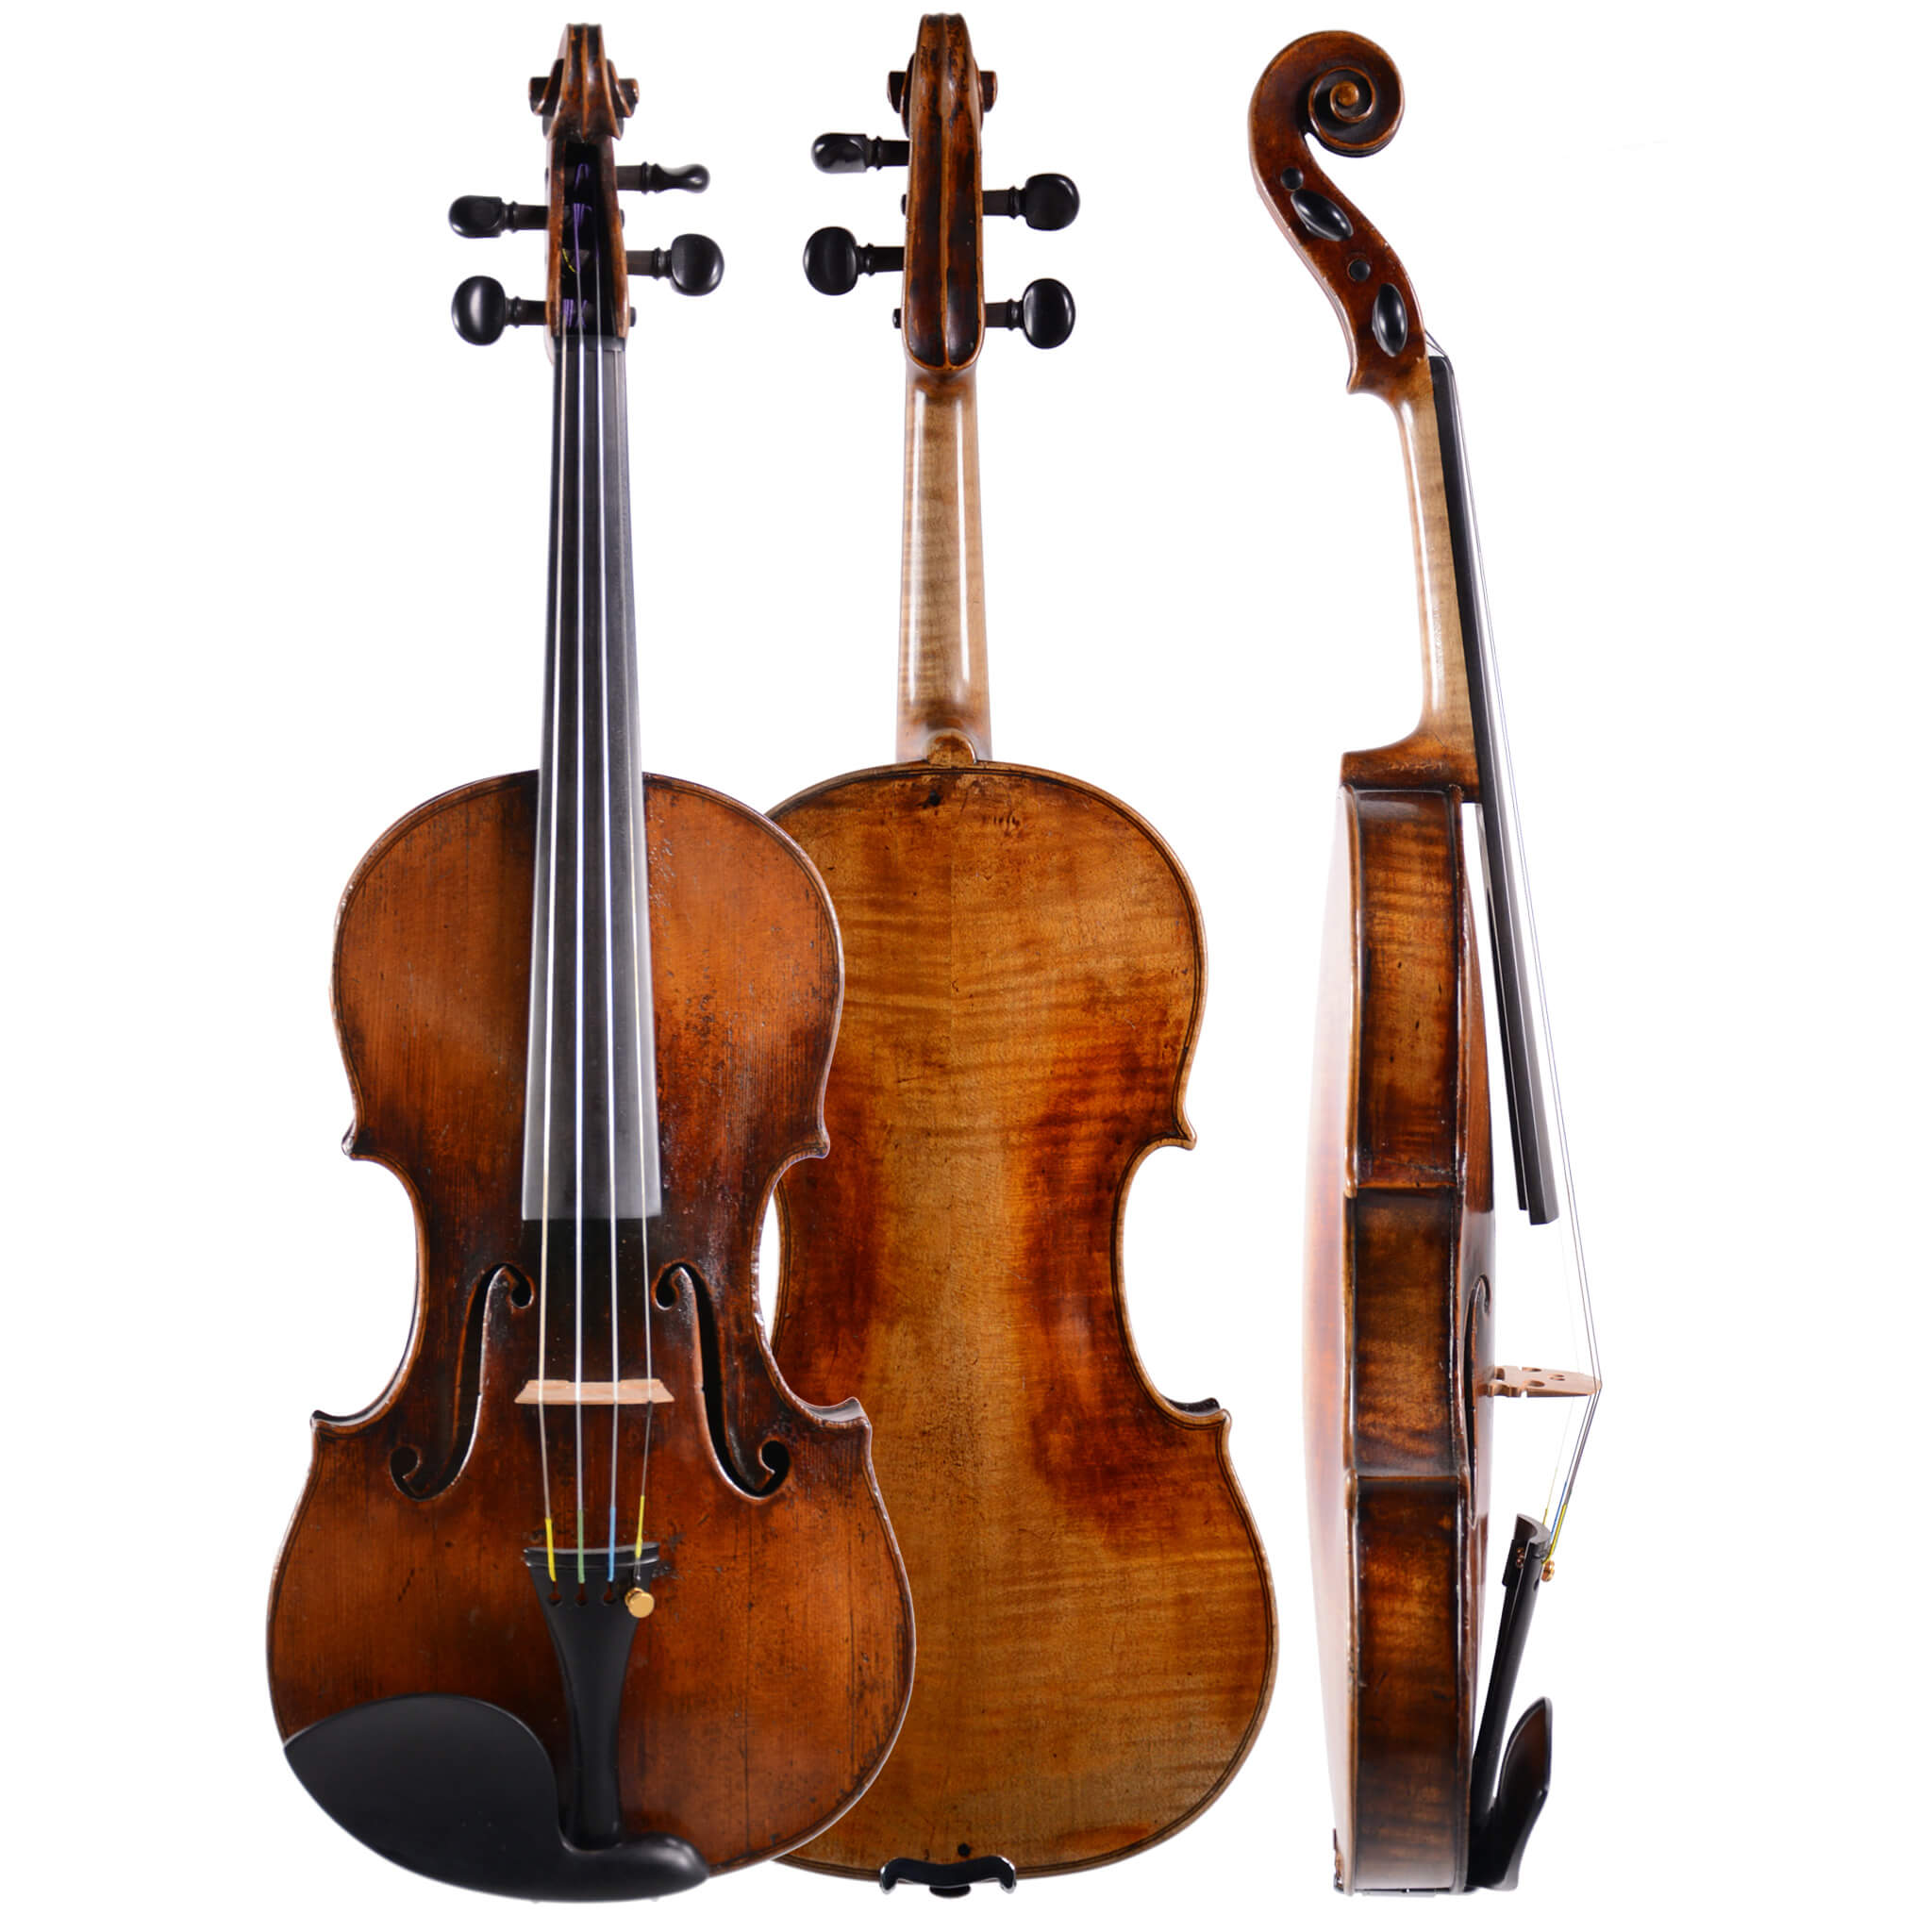 Antique (year 1825) Thomas Balestrieri Fecit Mantuae Violin